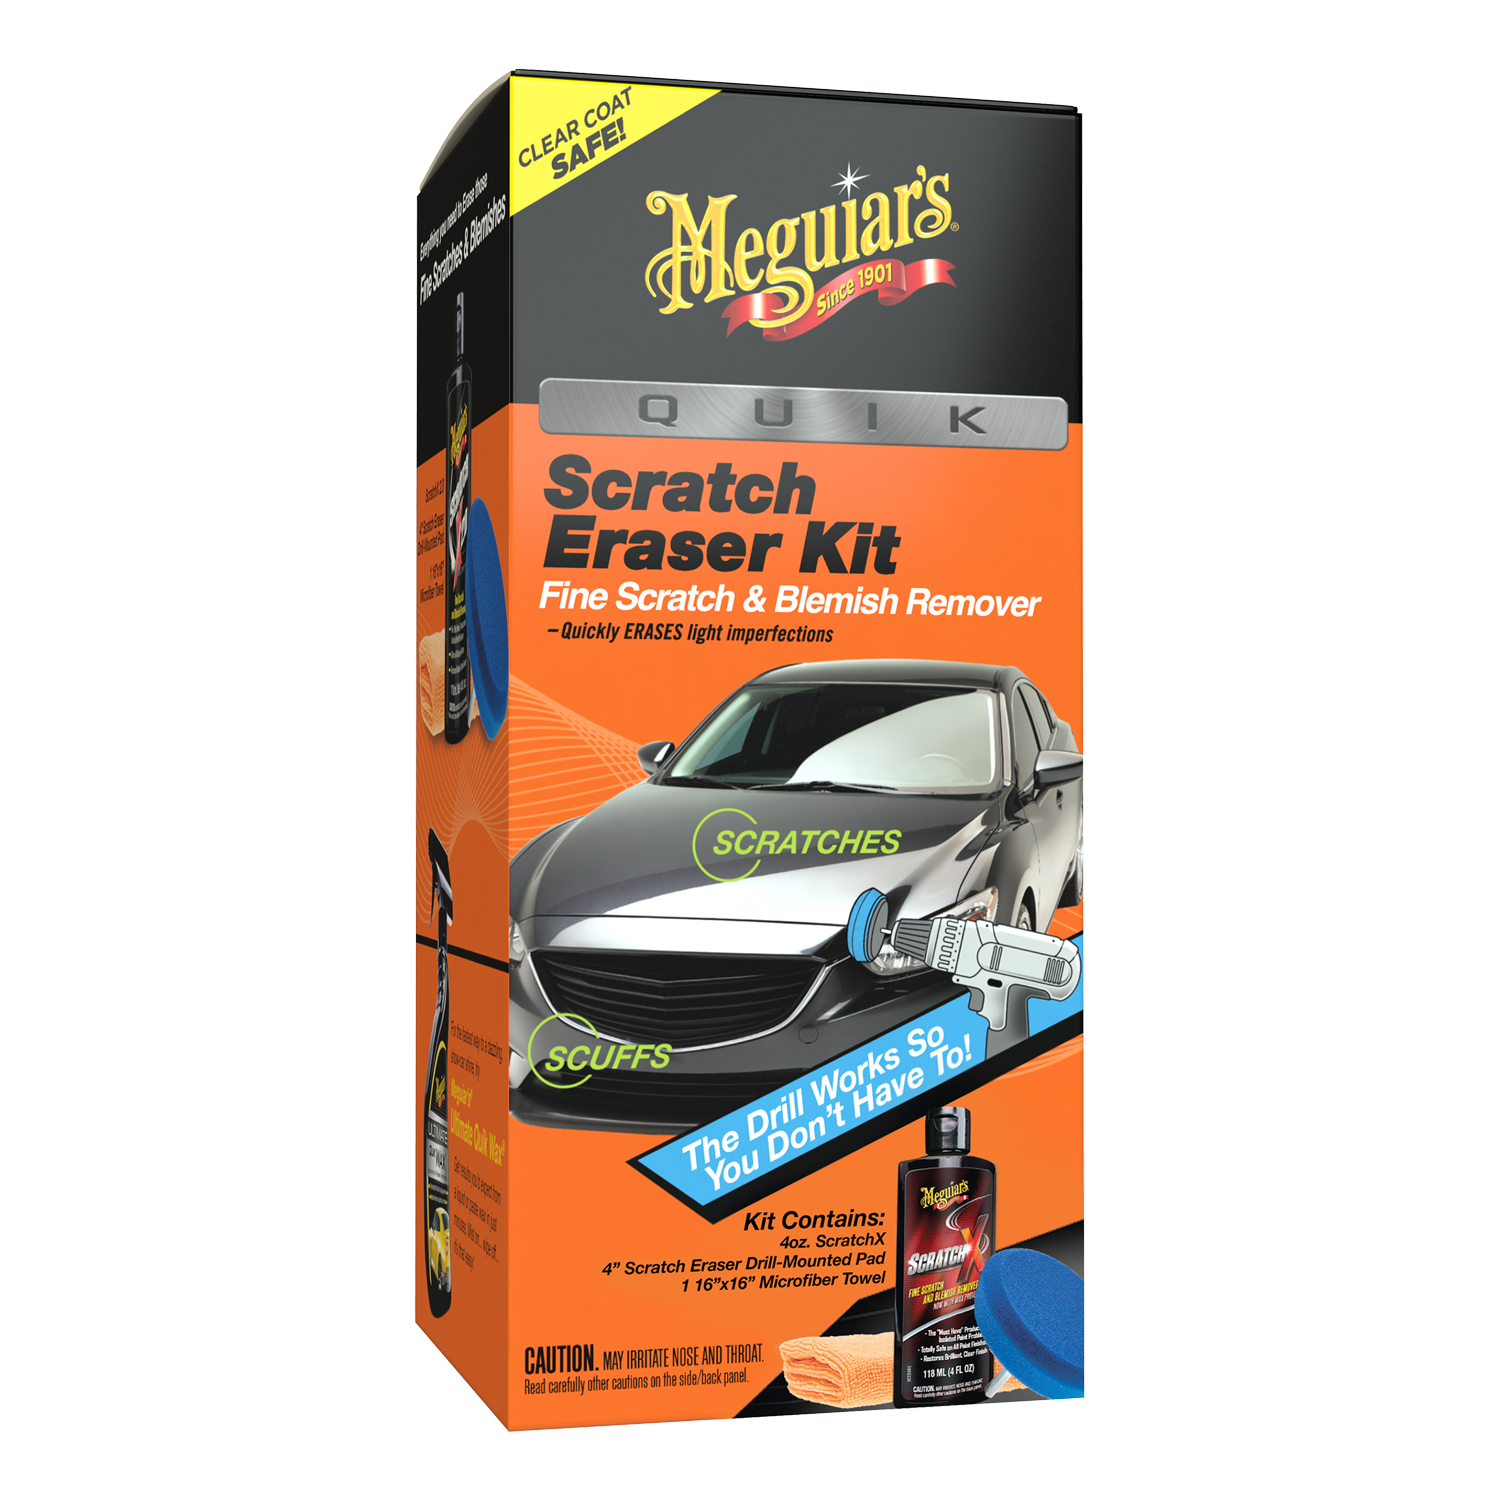 Meguiar's Quik Scratch Eraser Kit, Car Scratch Remover that Removes  Blemishes - Dutch Goat